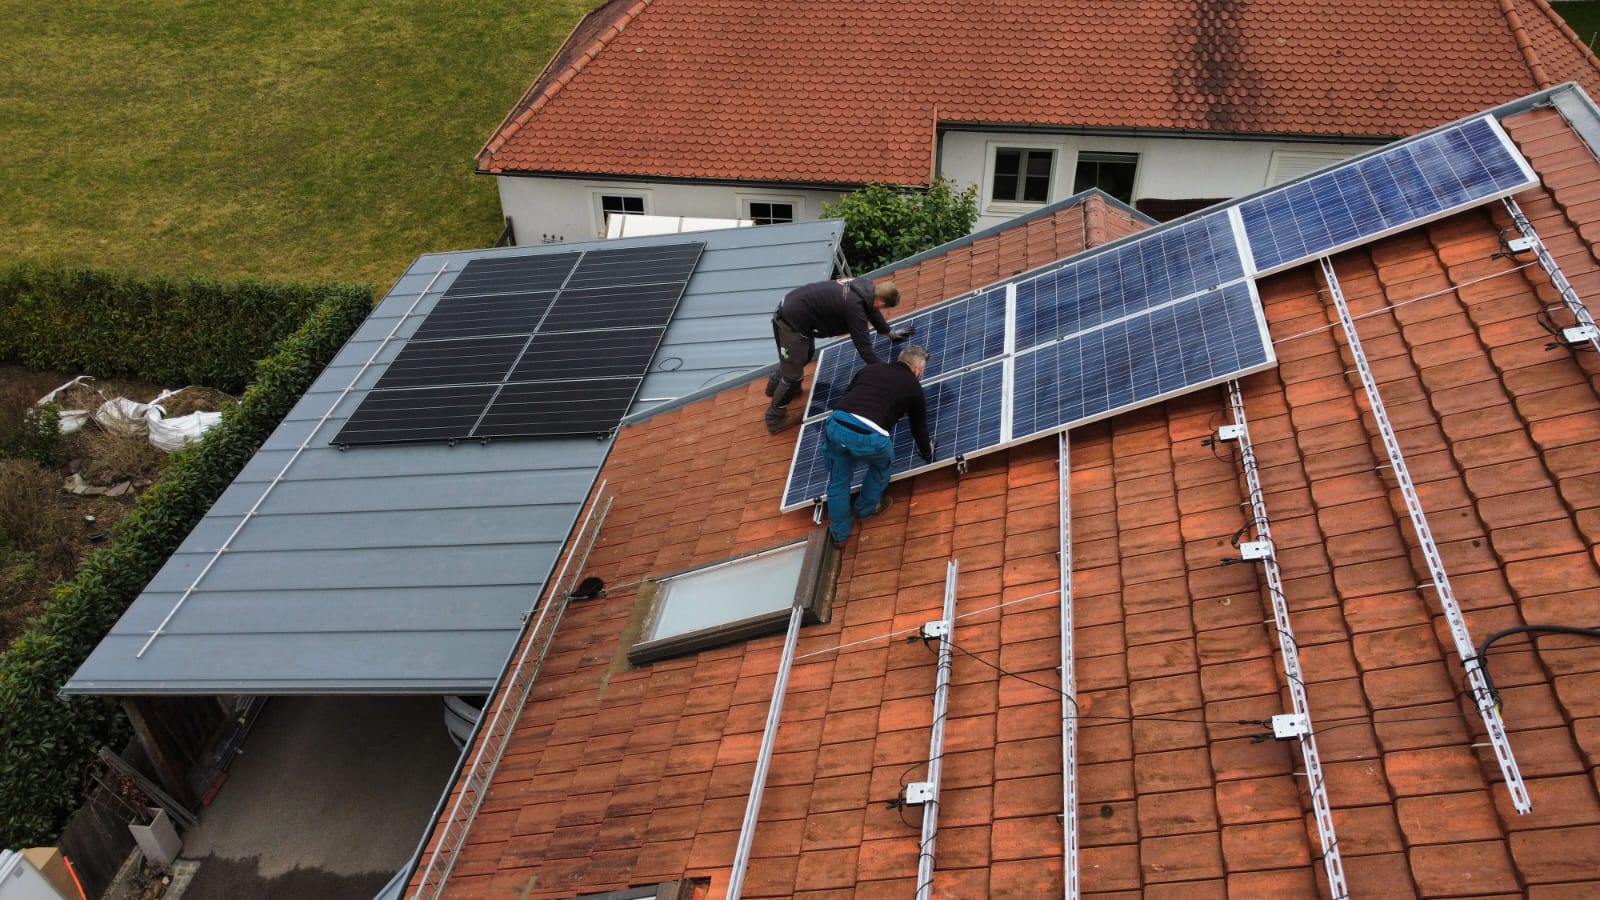 Arbeiter bauen Solaranlage auf dem Dach eines Hauses. Männertechniker in Helmen tragen Photovoltaik-Solarmodule im Freien.